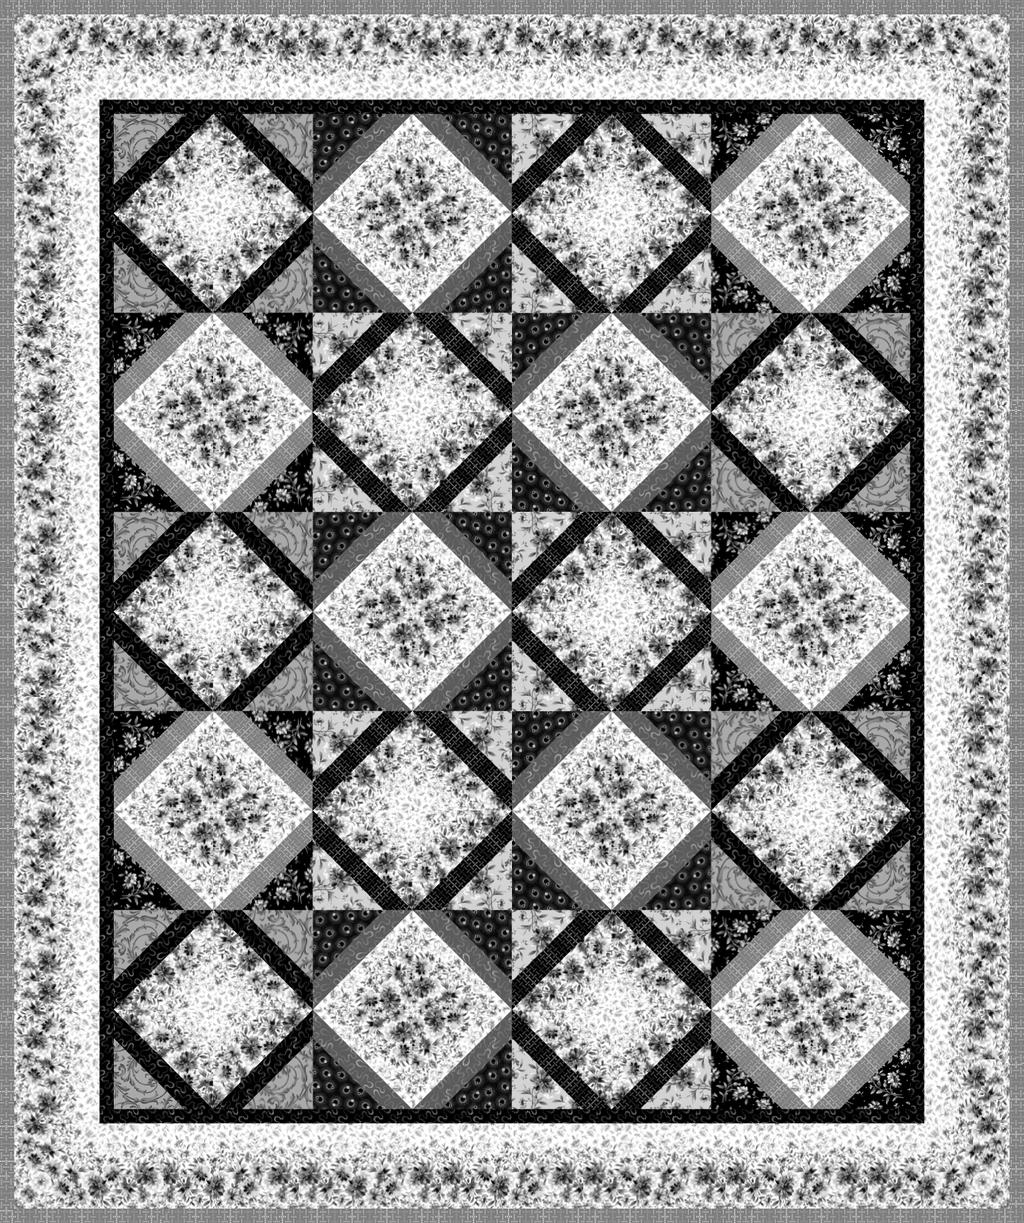 83½" x 100" quilt designed by Monique illard